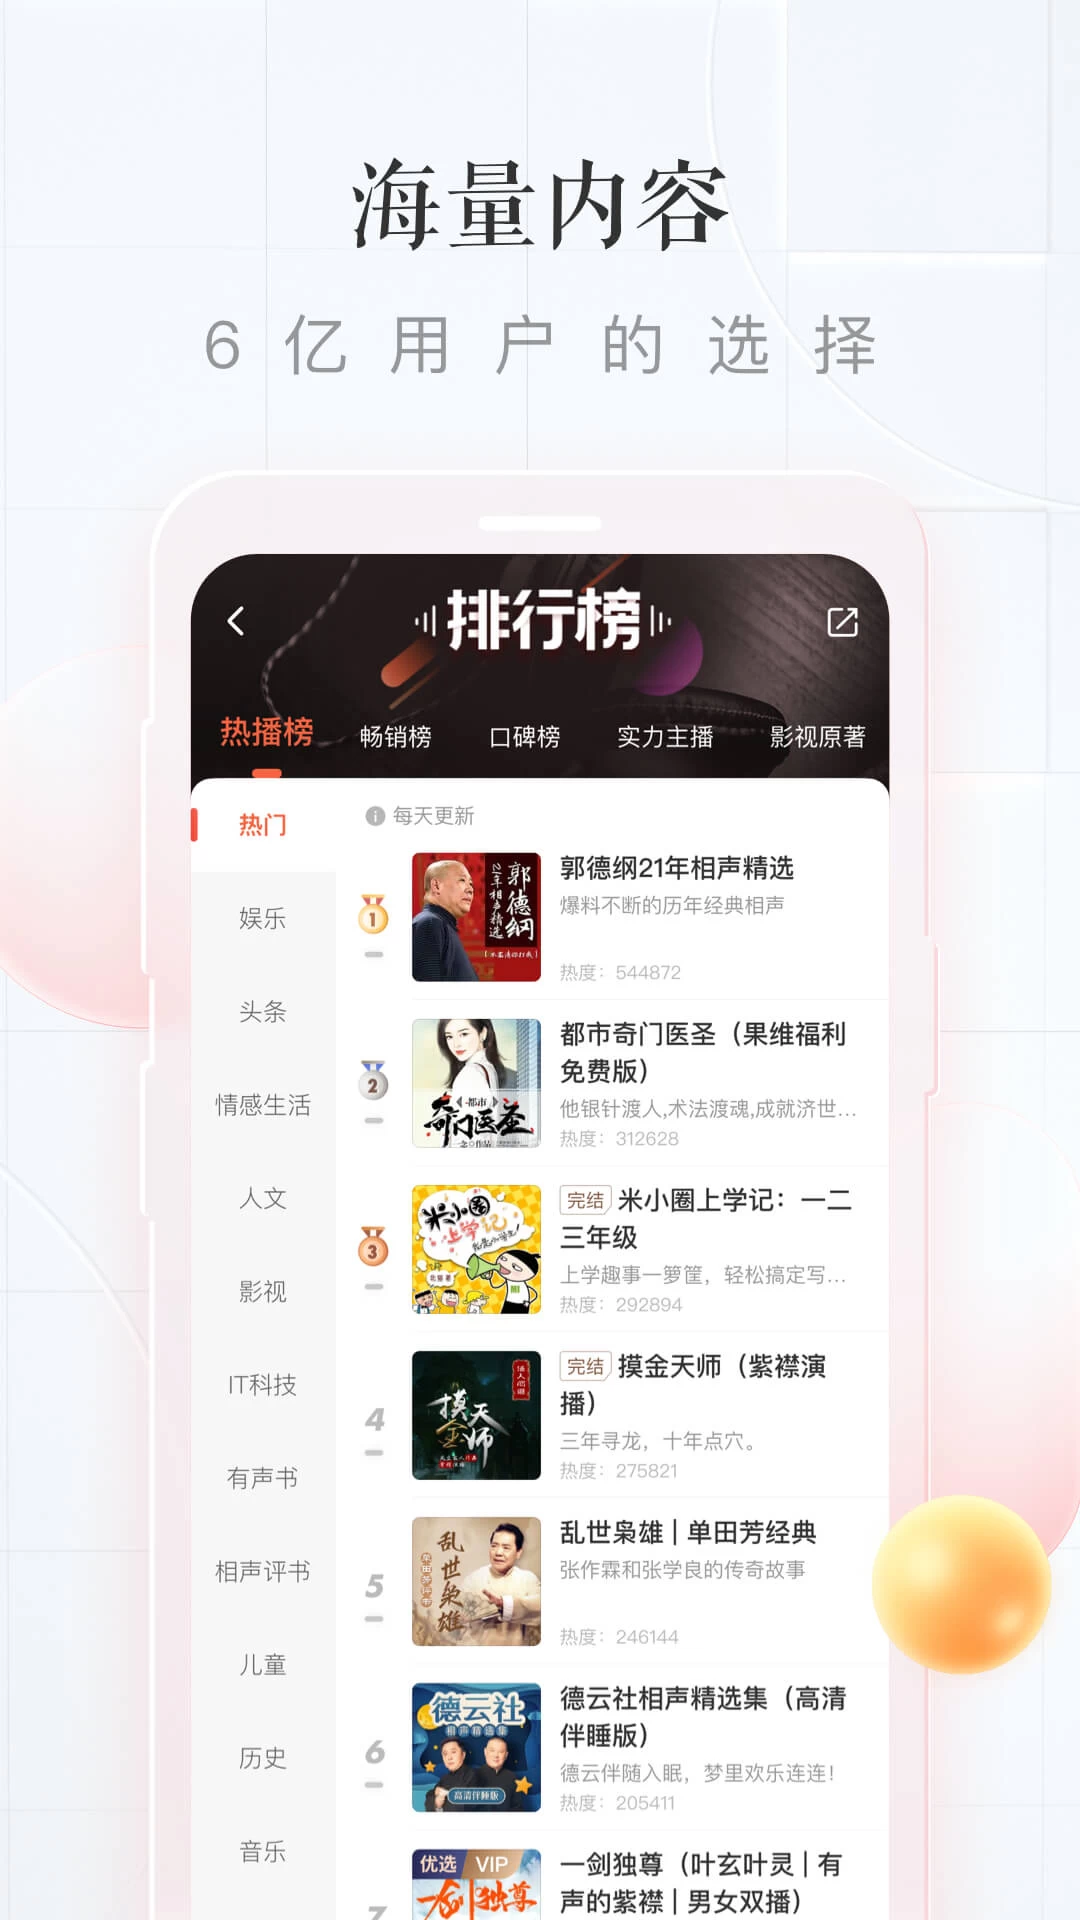 喜马拉雅极速版 v3.2.87.3 中国最大的音频分享平台，解锁会员版